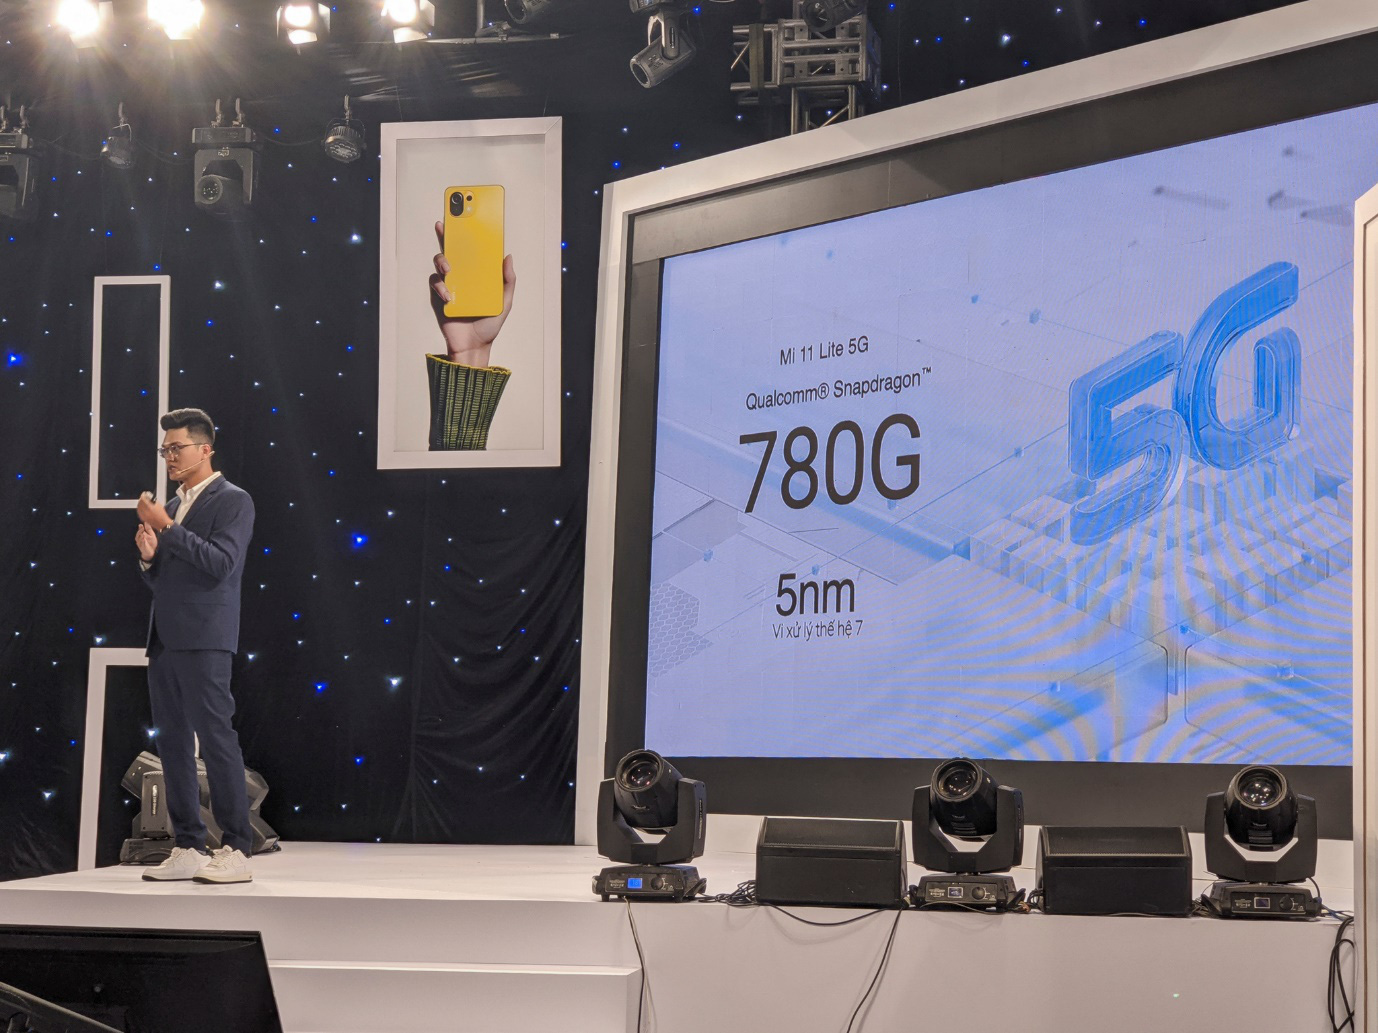 CellphoneS mở bán Xiaomi Mi 11 Lite 5G, siêu phẩm với chip Snap 780 đầu tiên của Xiaomi - Ảnh 1.